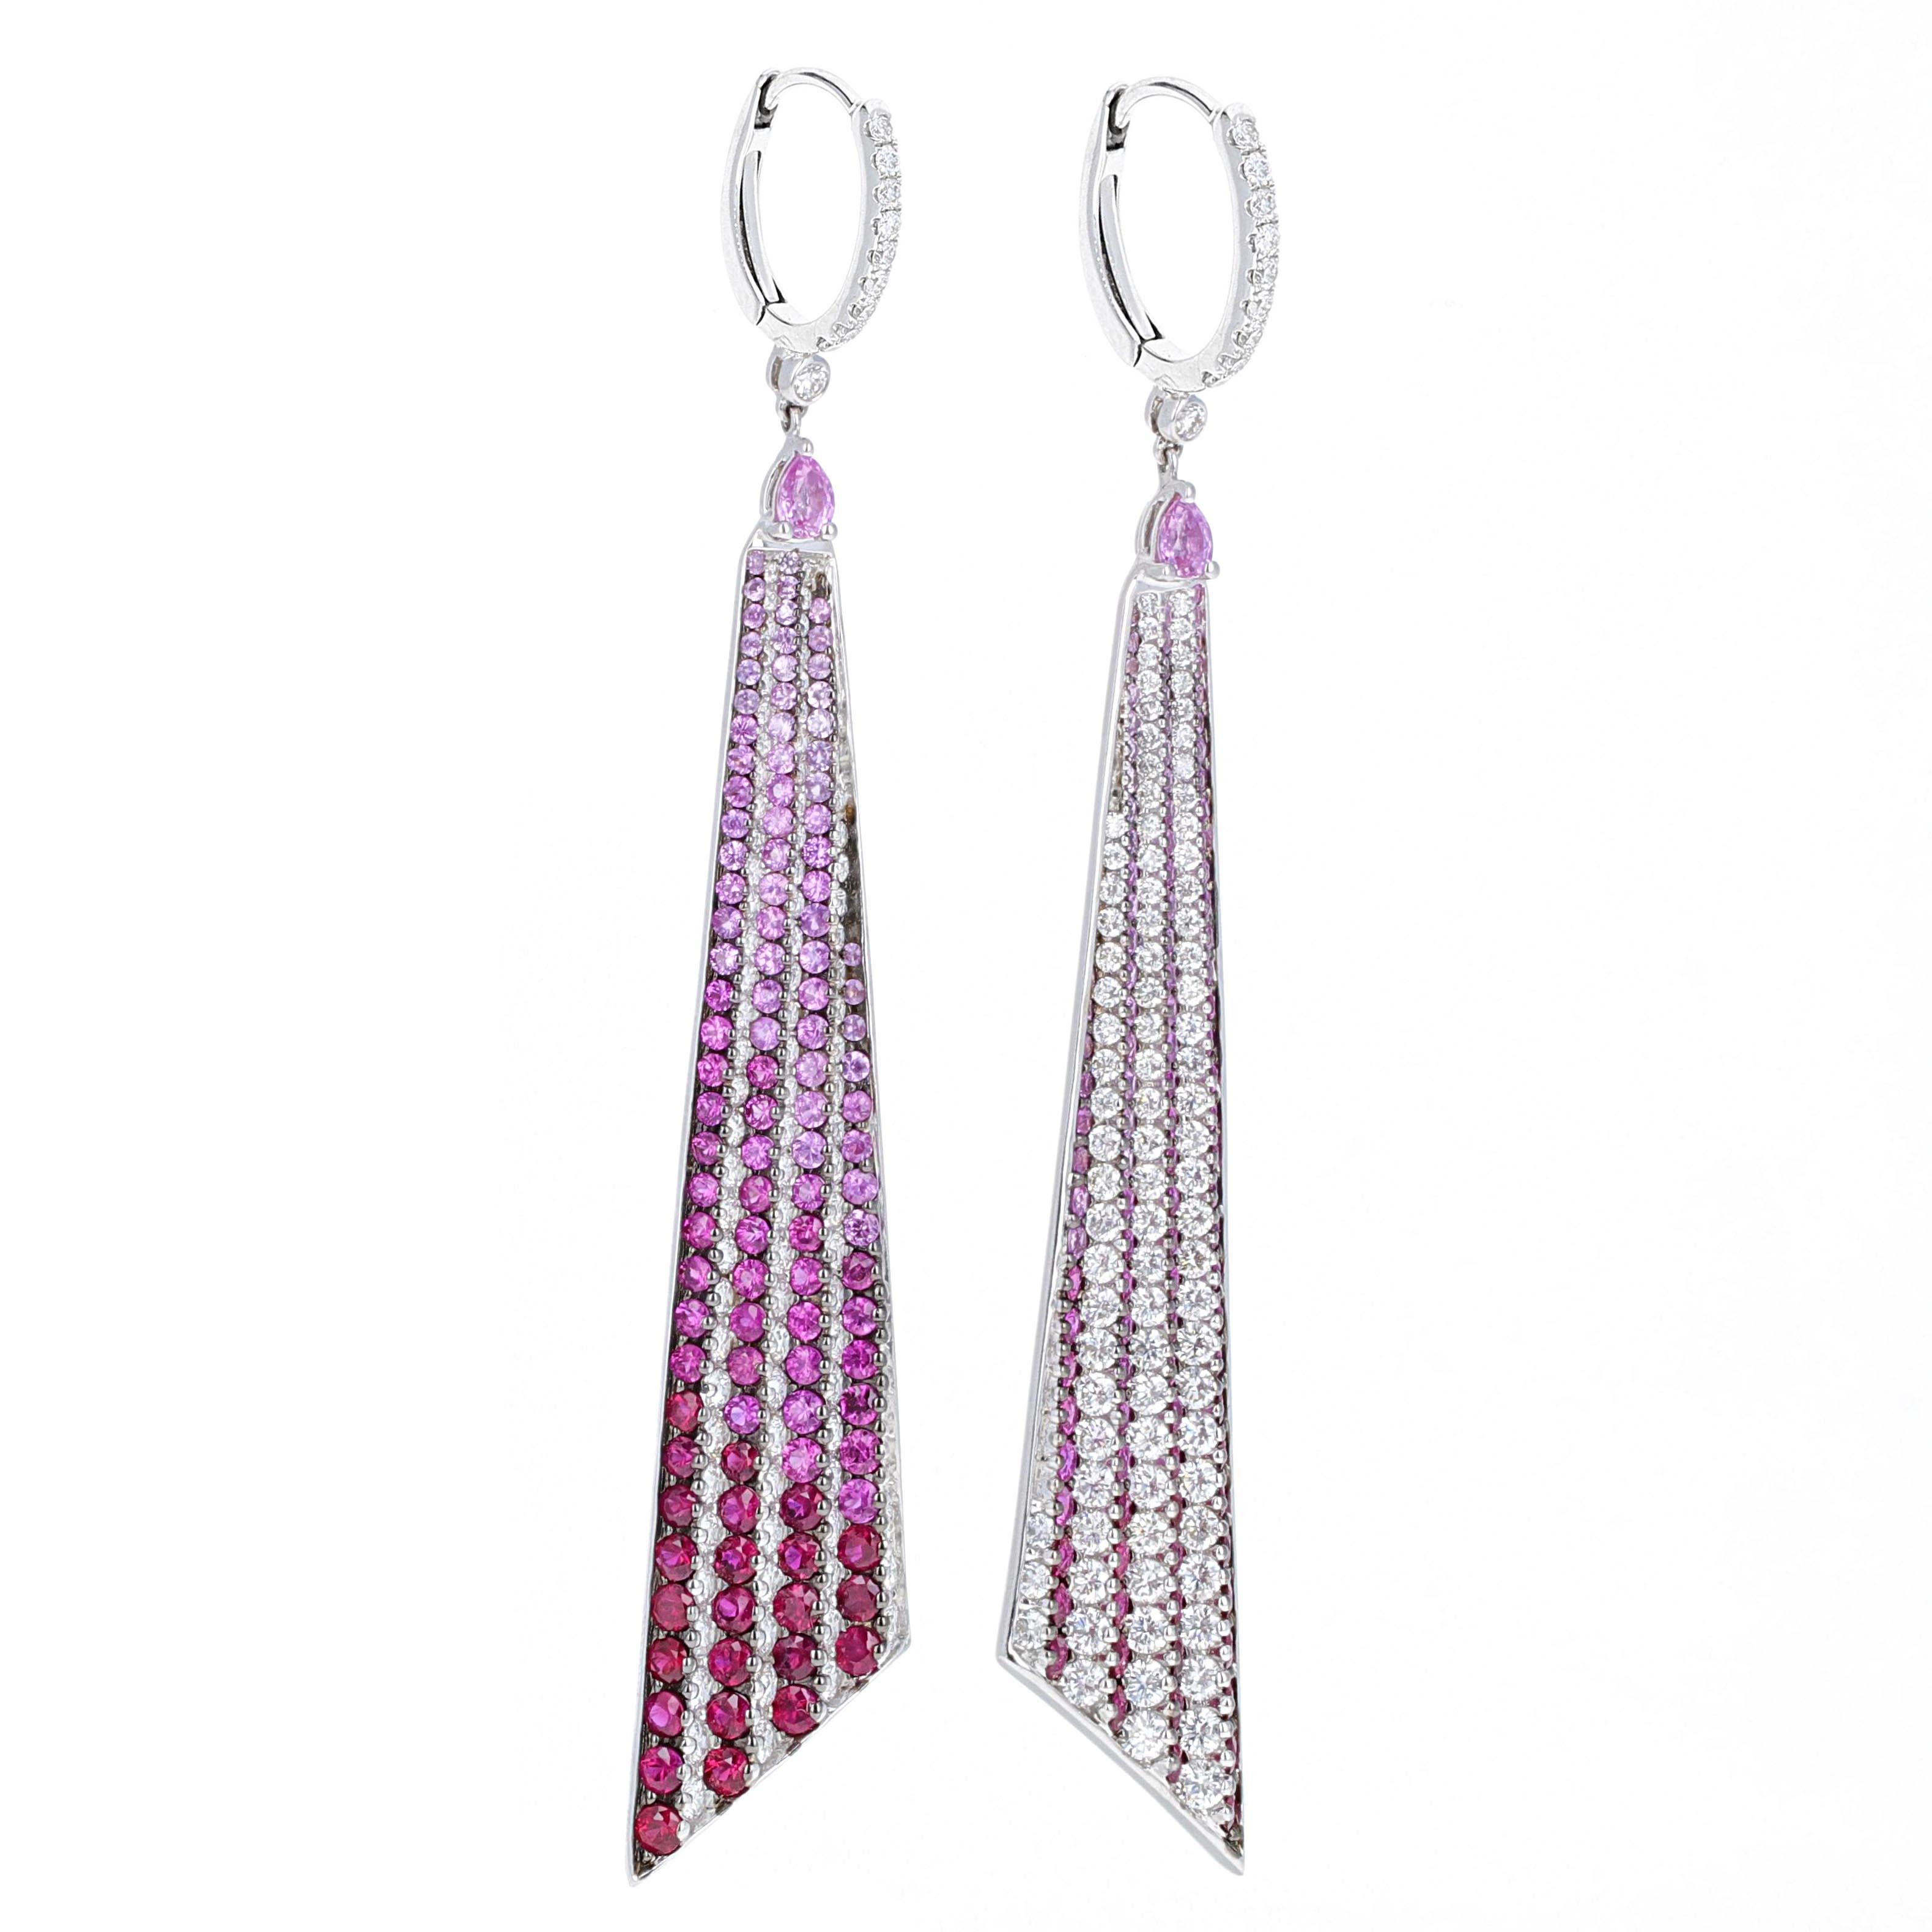 Farbwechselnde Ohrringe mit Diamanten, Rubinen und rosa Saphiren in Ombre'. Es sind einzigartige, modische Ohrringe. Diese Ohrringe sind ein echter Hingucker. Wenn man die Ohrringe aus verschiedenen Blickwinkeln betrachtet, wechselt die Farbe von